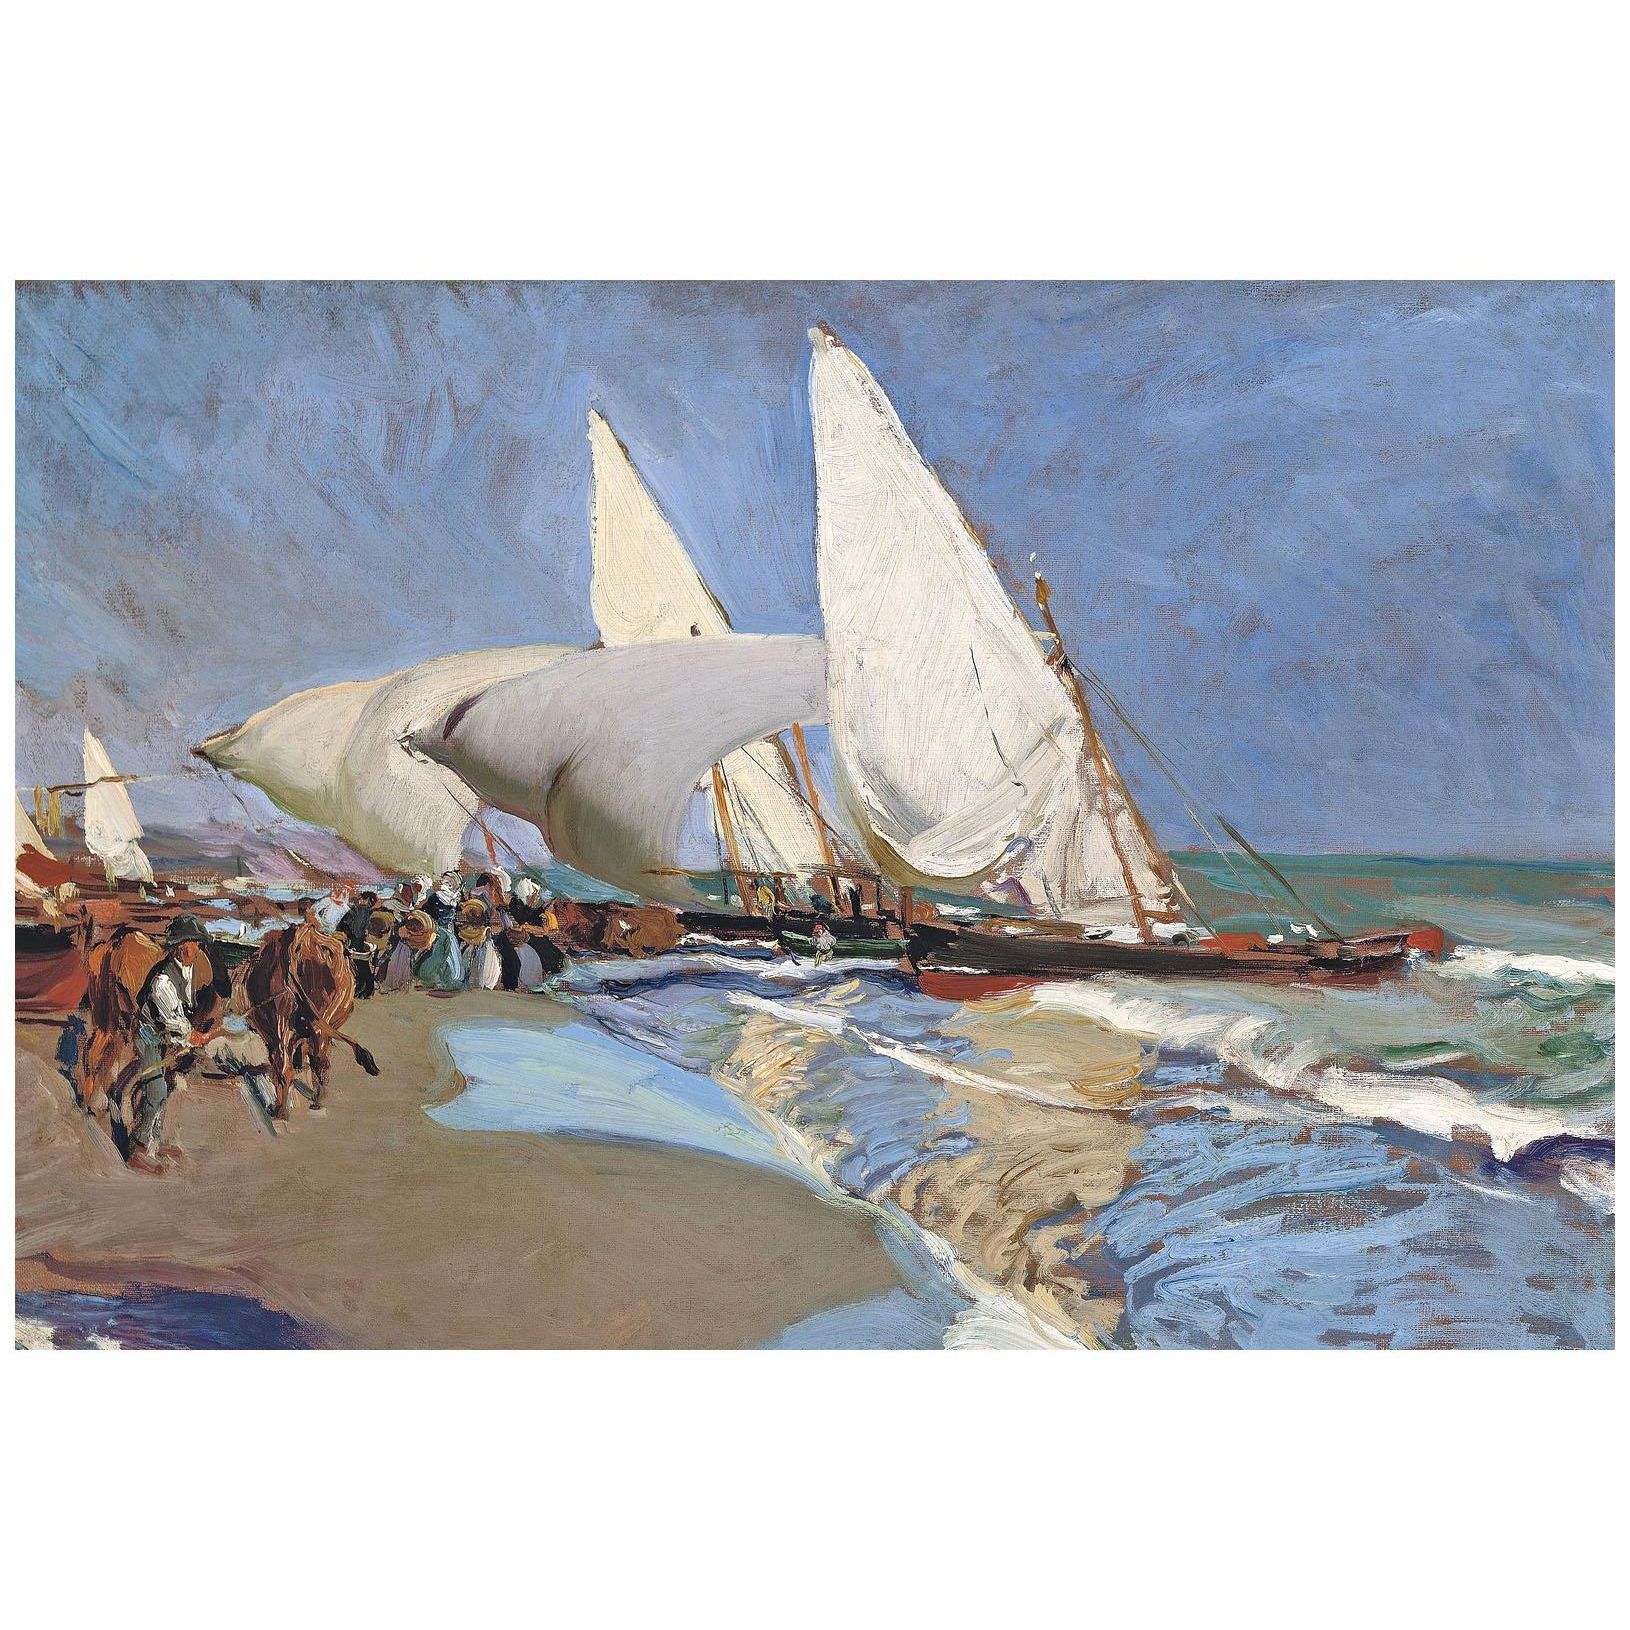 Joaquin Sorolla. La playa de Valencia. 1908. Private collection